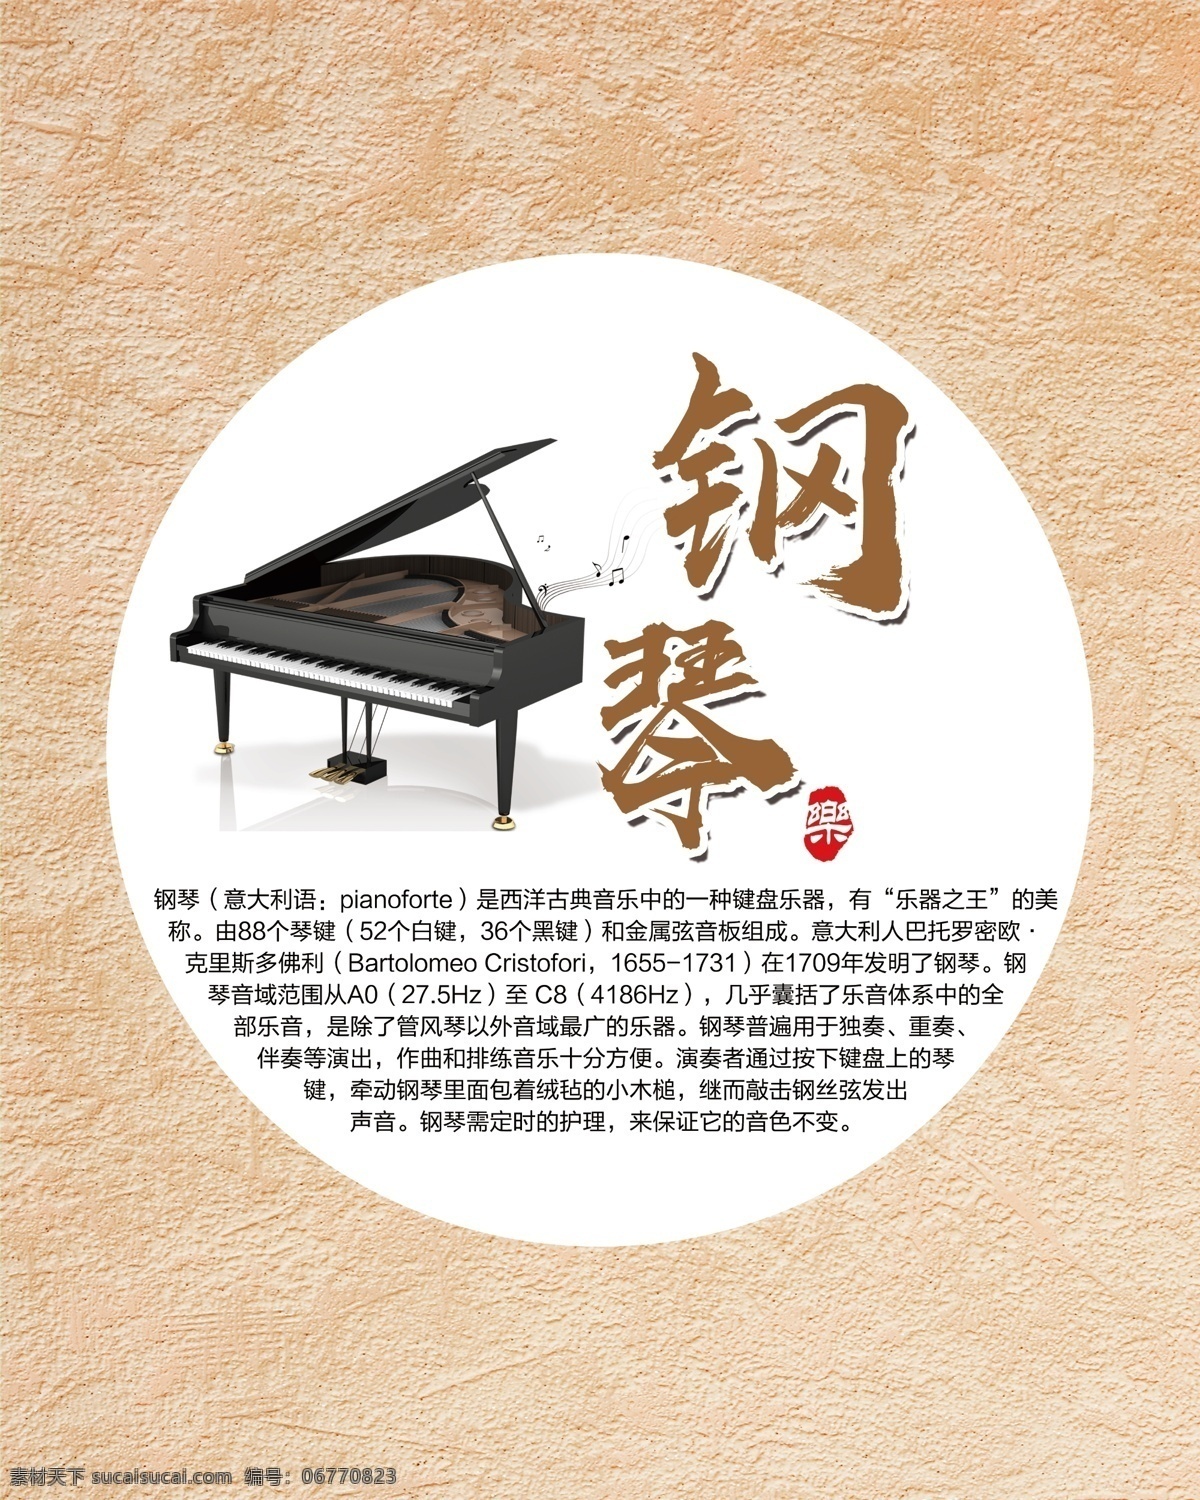 钢琴海报 钢琴 乐器 培训 海报 画框 古风 中国风 琴 音乐